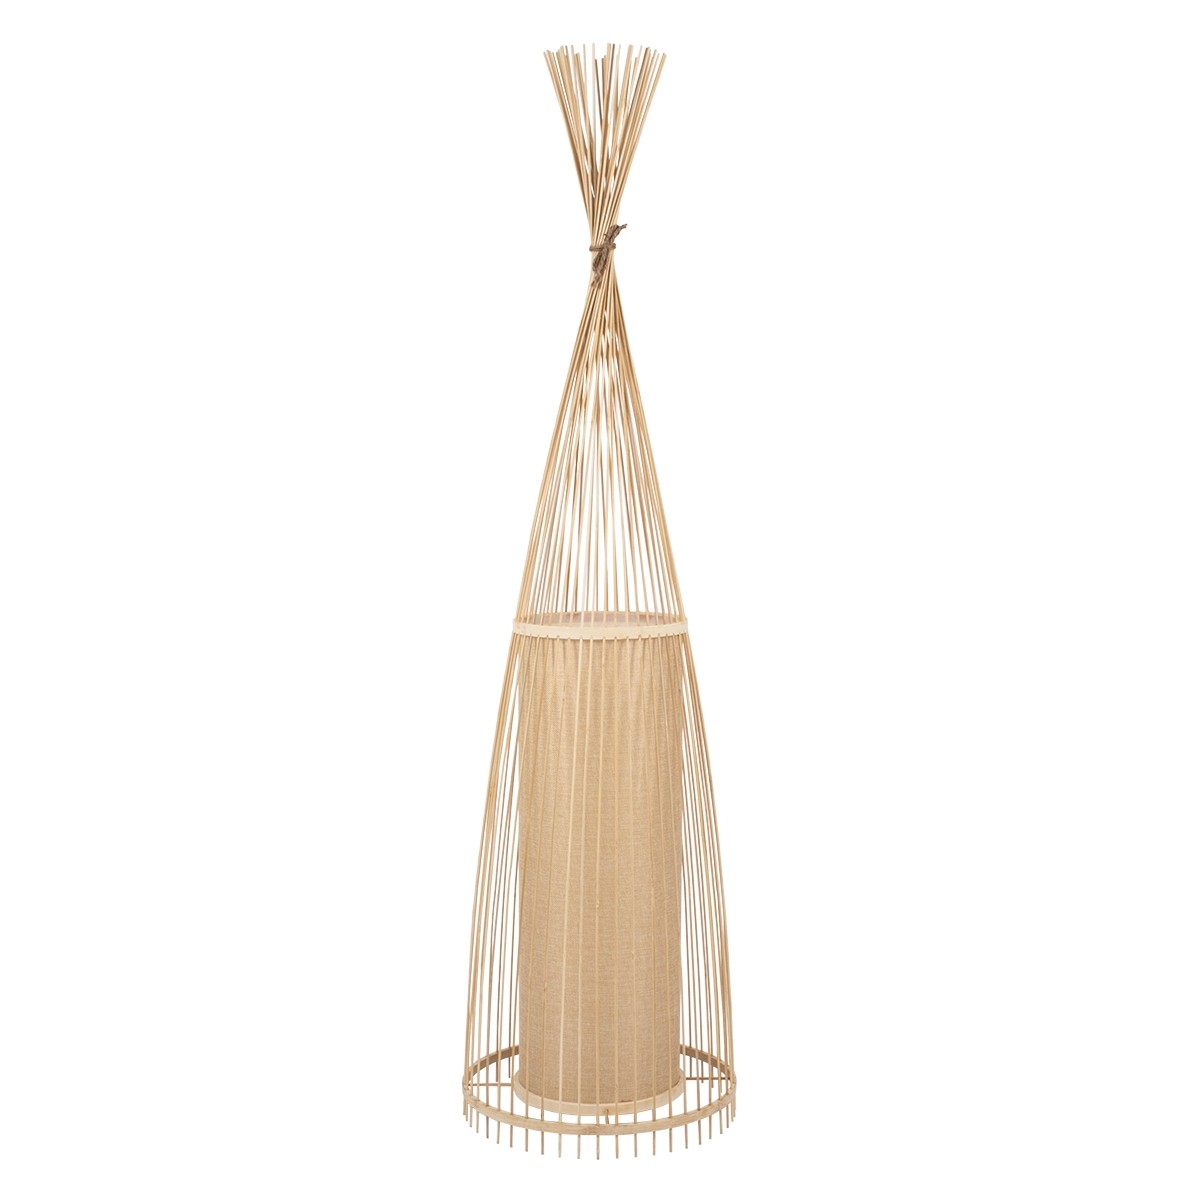 Δαπέδου Φωτιστικό AZORES Μονόφωτο Μπεζ Ξύλινο Bamboo Πλέγμα Φ40 x Υ150cm 01755